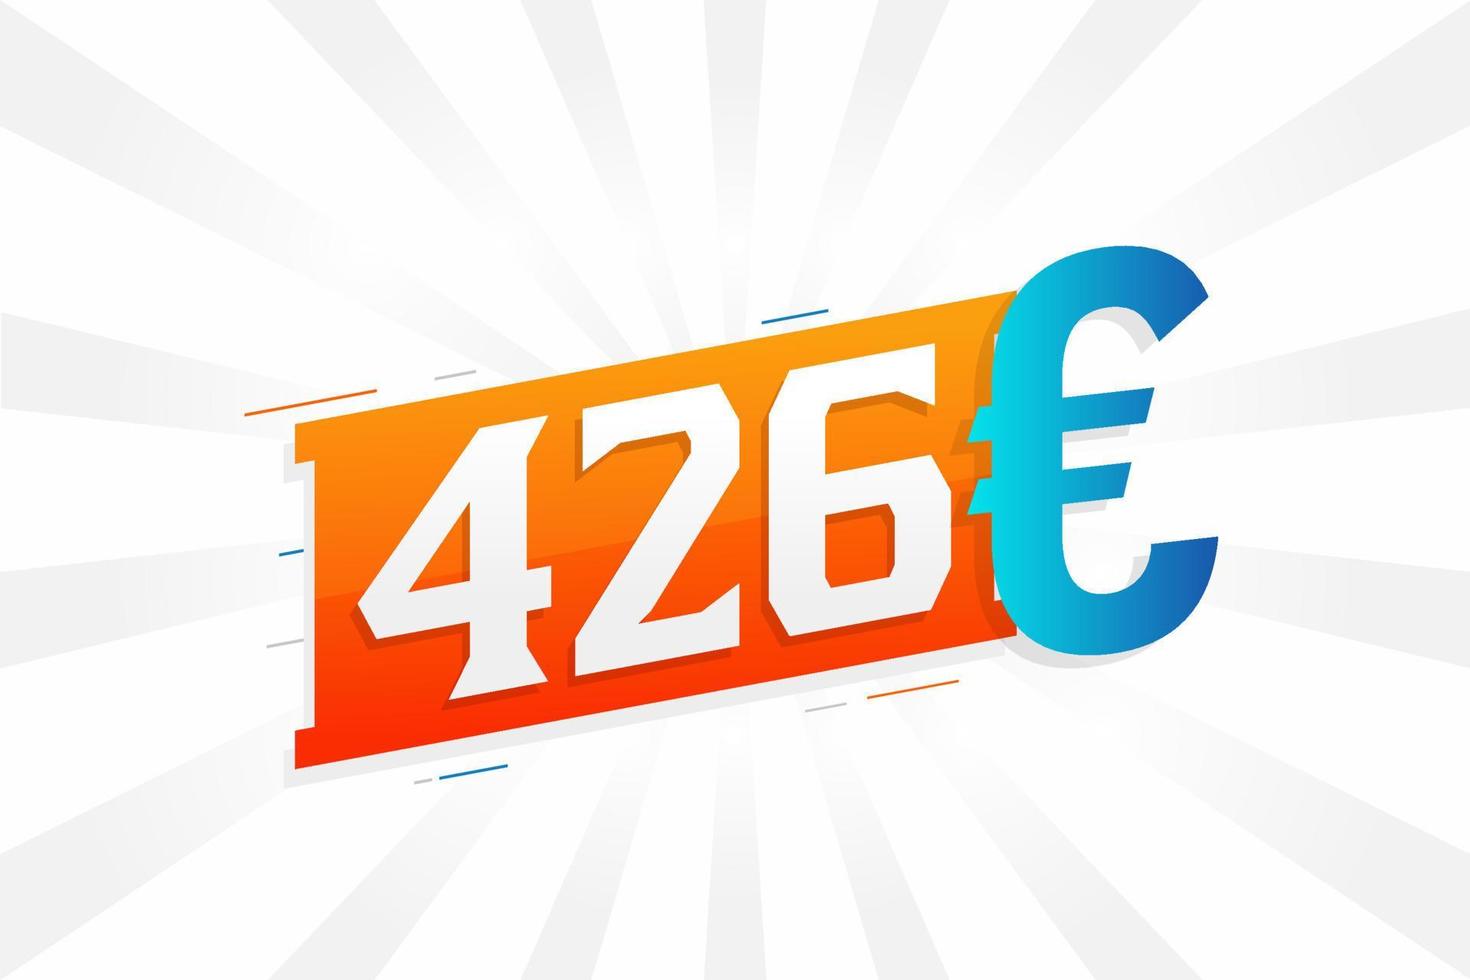 426 euro valuta vector tekst symbool. 426 euro Europese unie geld voorraad vector